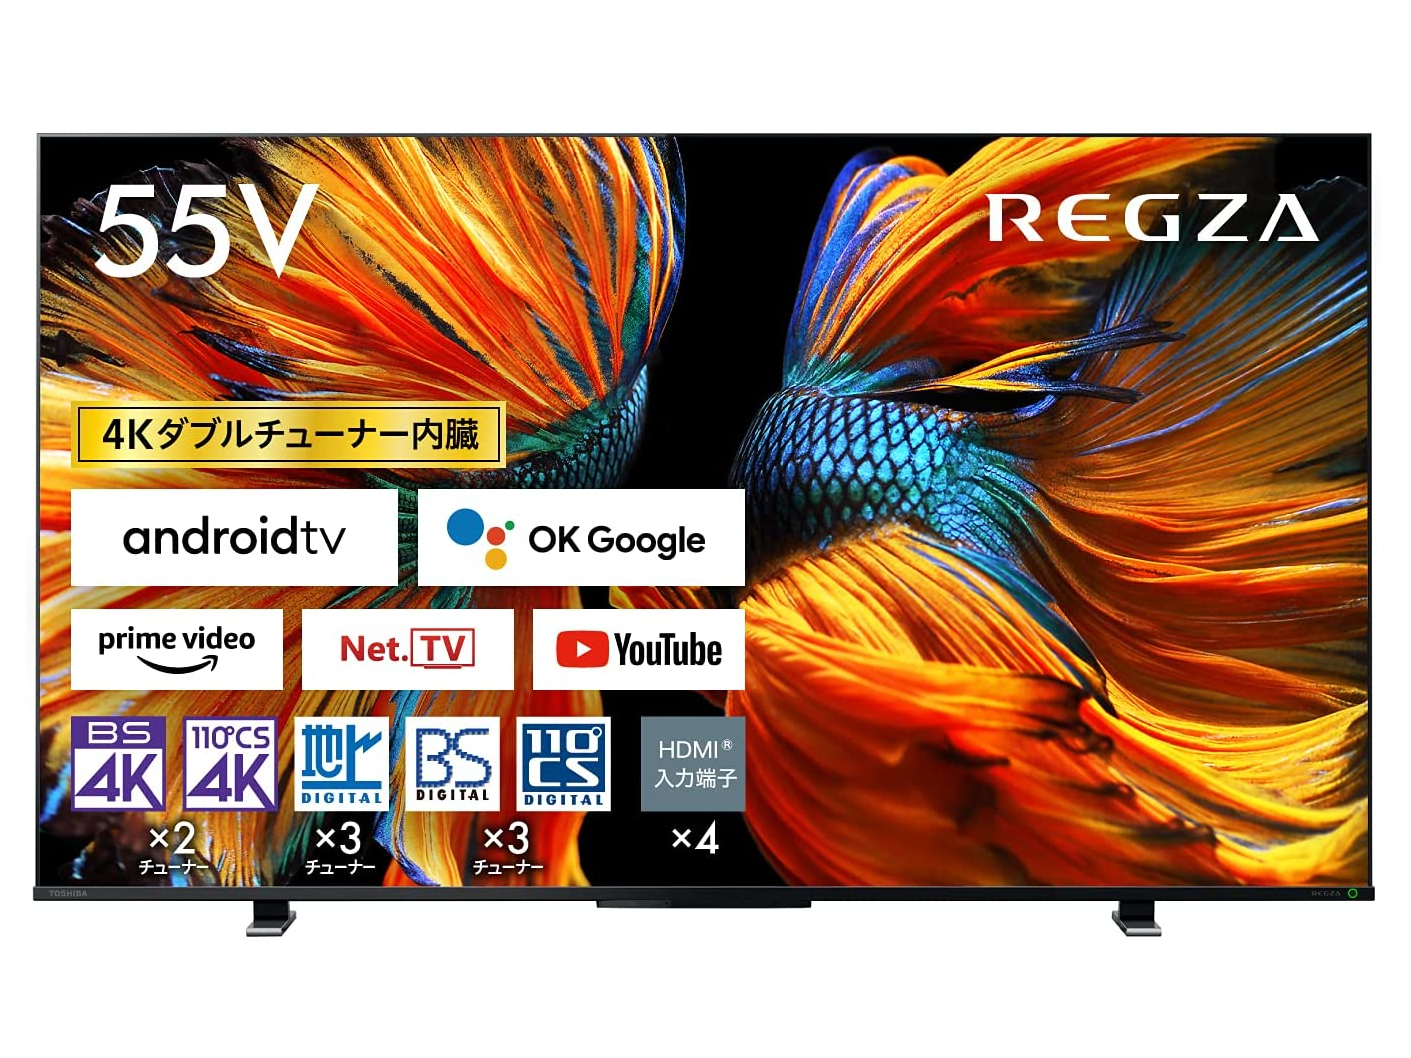 【本日みつけたお買い得品】55型TV「REGZA」が約2万円引き。4K 